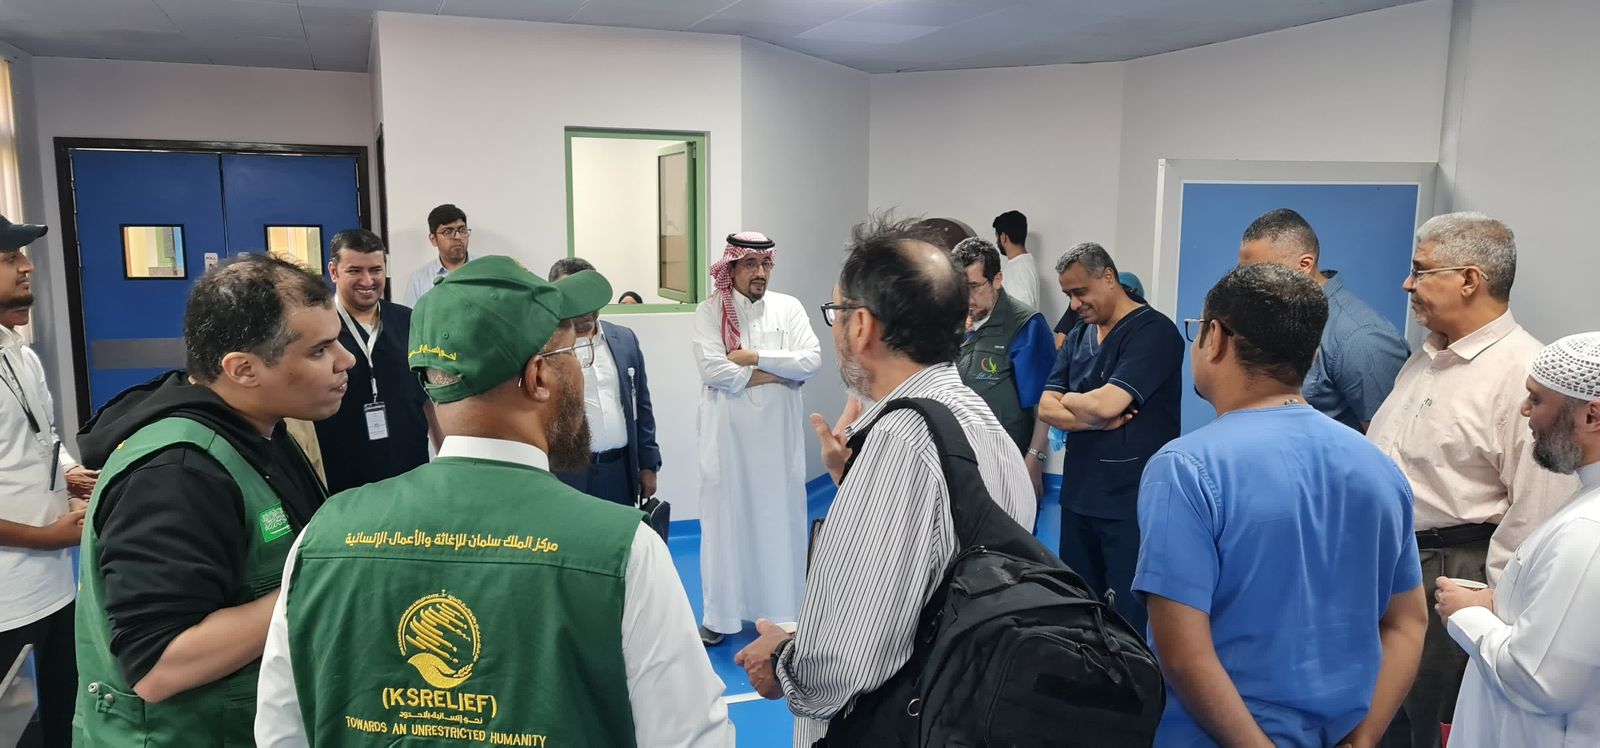 مركز الملك سلمان للإغاثة يُدشِّن البرنامج الطبي التطوعي لجراحة القلب المفتوح والقسطرة في اليمن